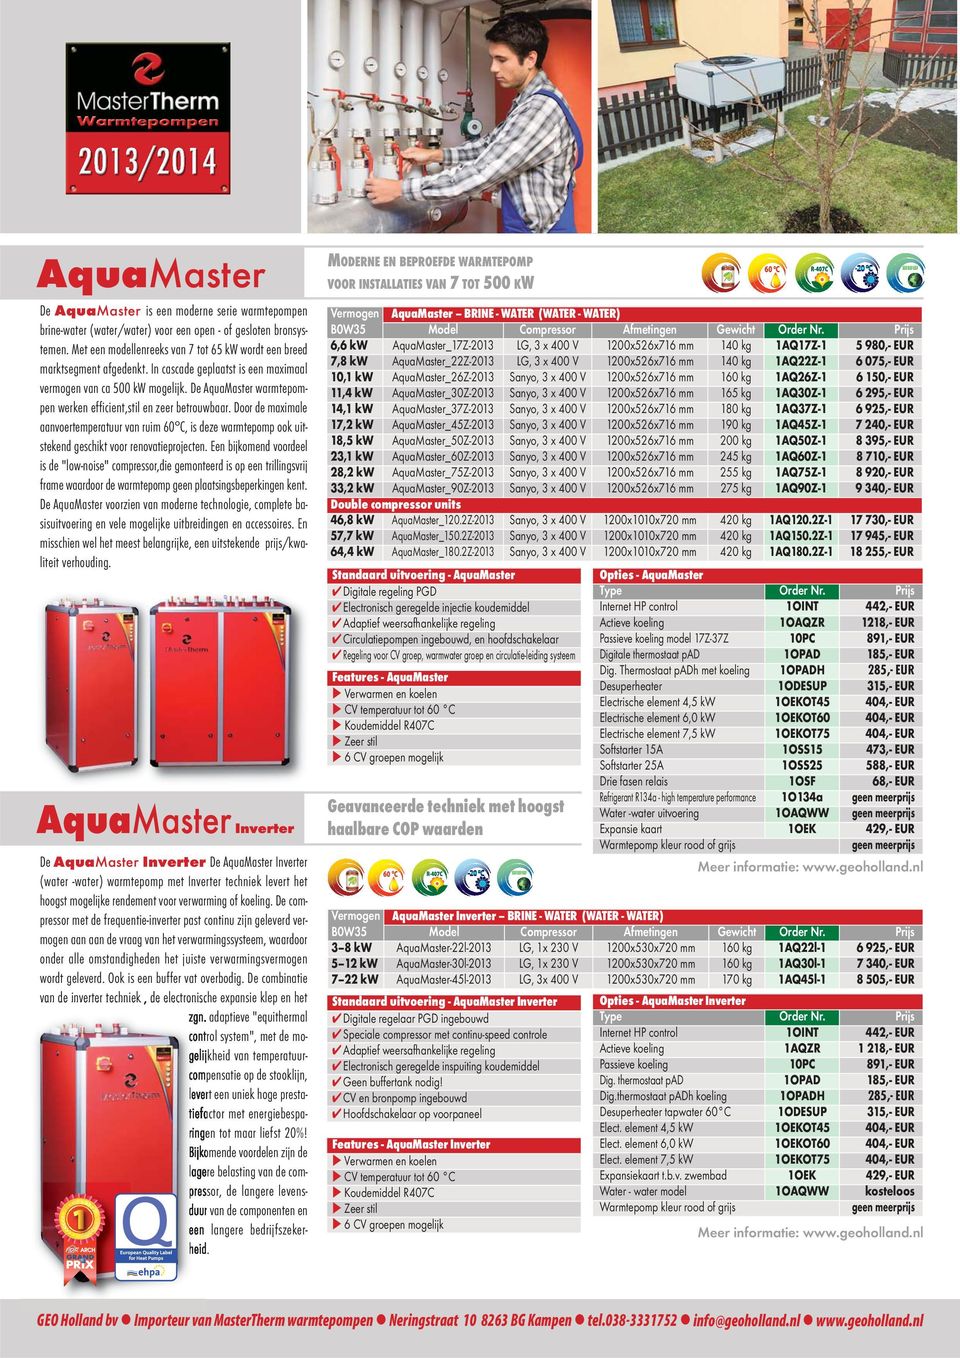 De AquaMaster warmtepompen werken efficient,stil en zeer betrouwbaar. Door de maximale aanvoertemperatuur van ruim 60 C, is deze warmtepomp ook uitstekend geschikt voor renovatieprojecten.